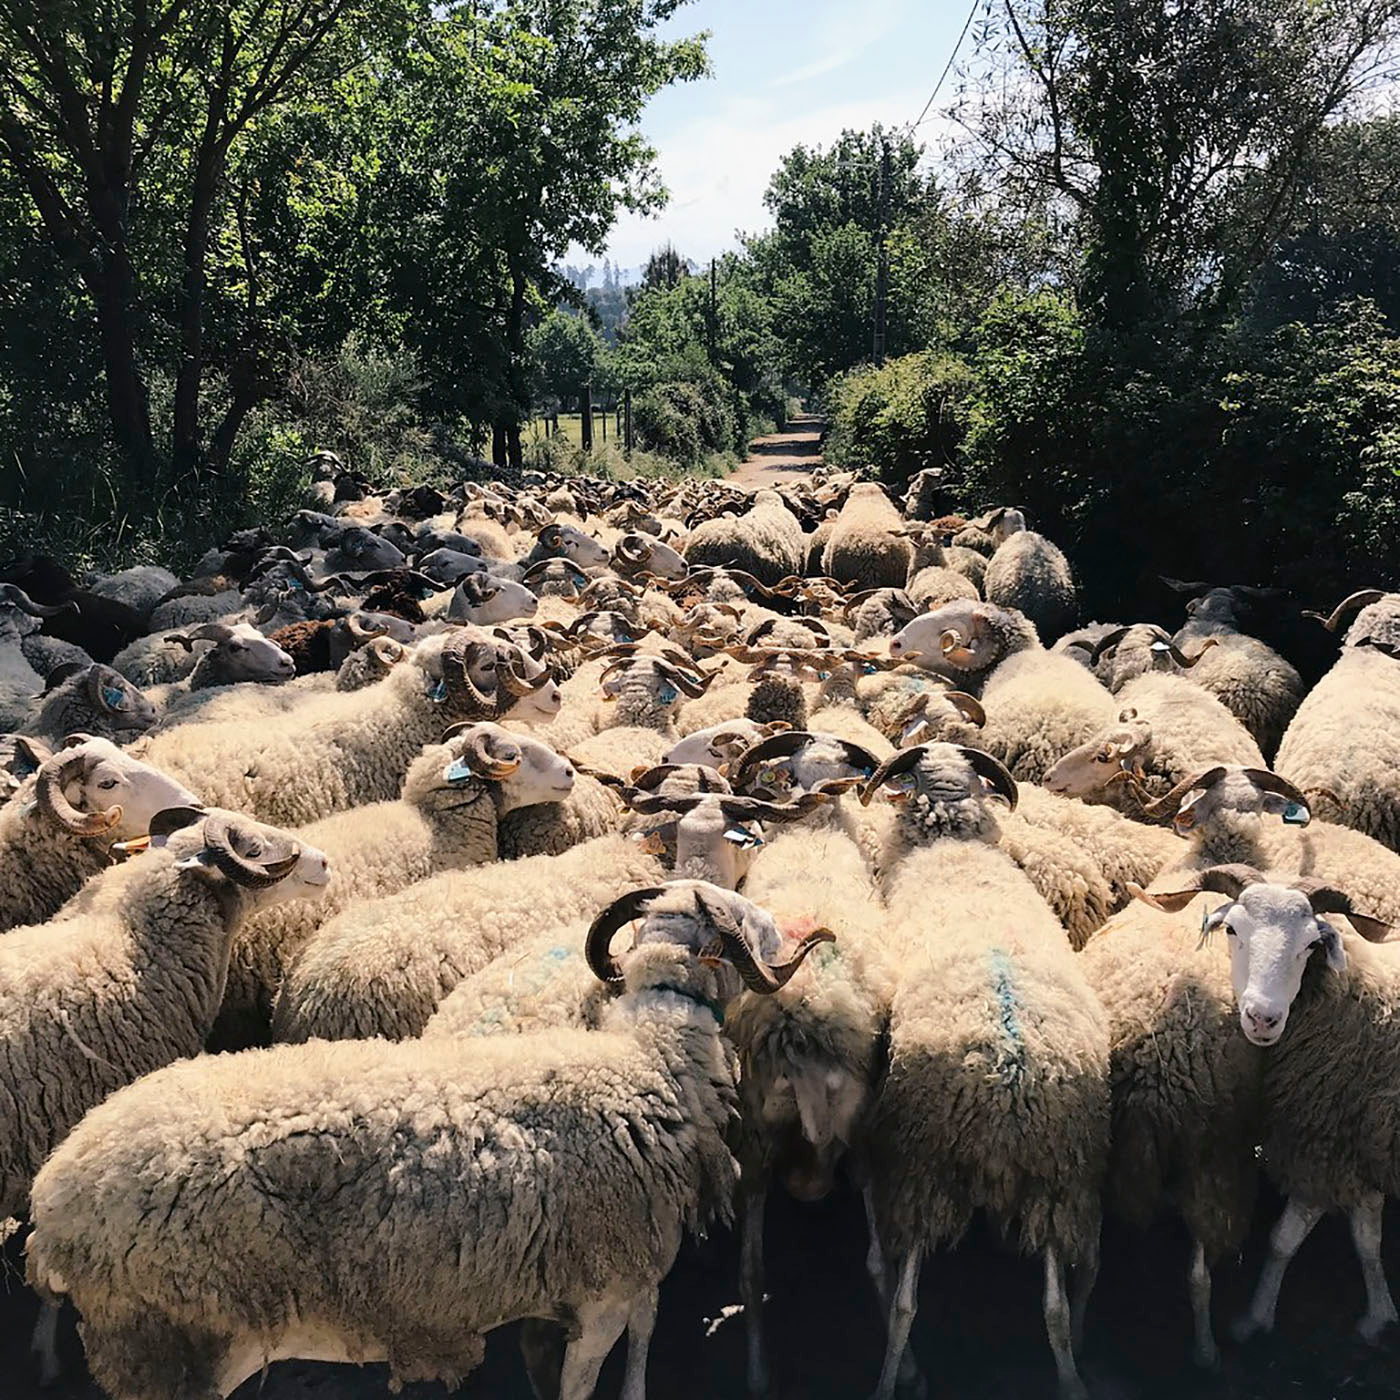 Bordaleira Serra da Estrela sheep